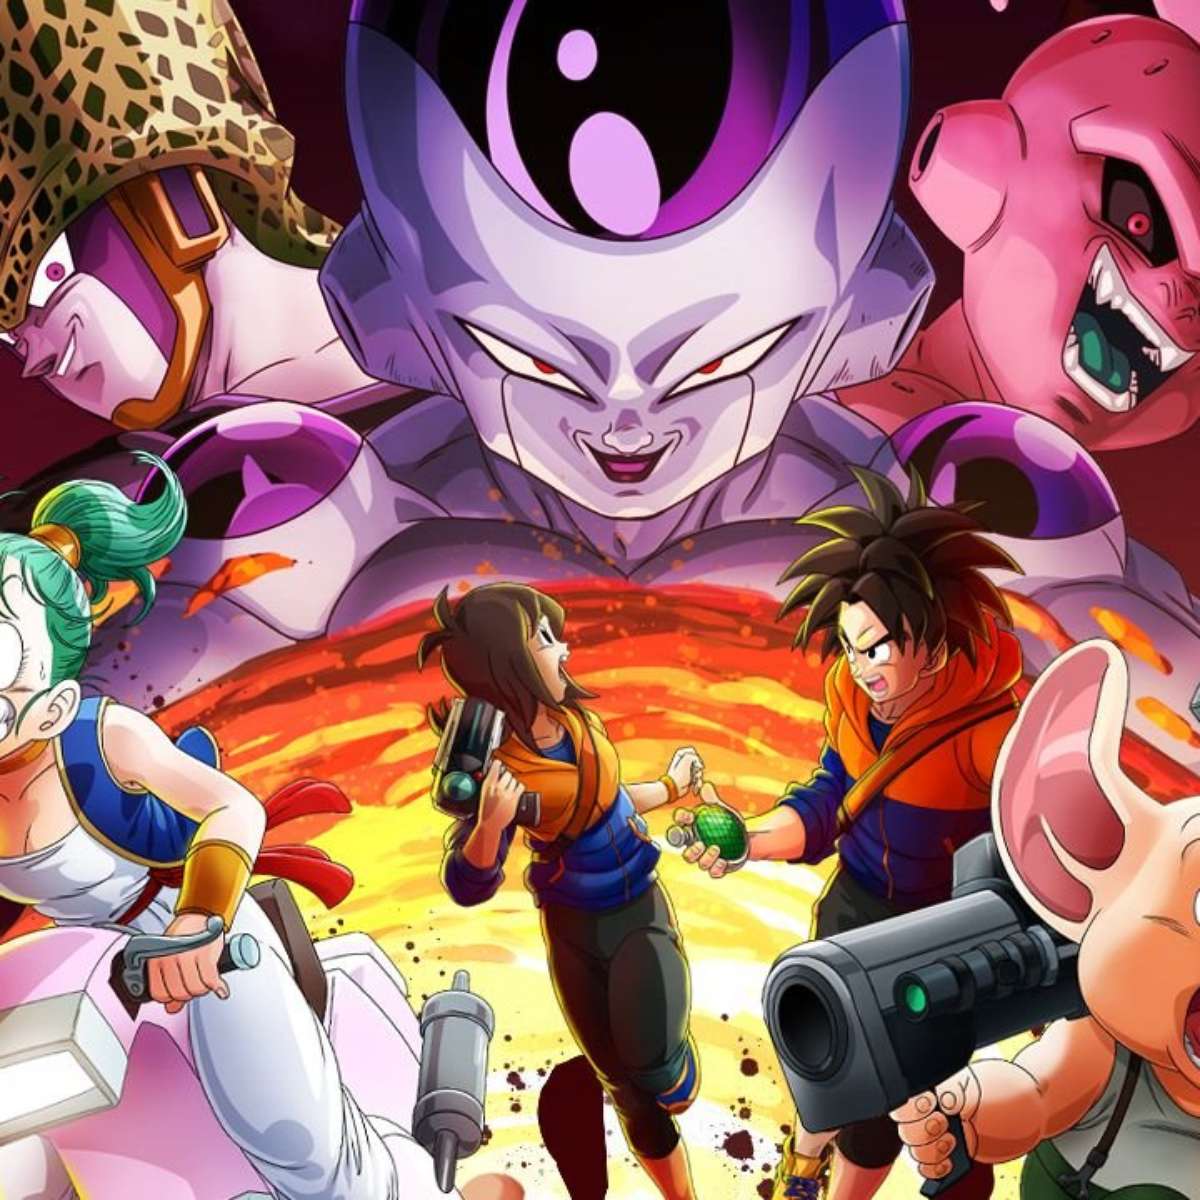 Mod de Dragon Ball Z: Kakarot torna todas as personagens jogáveis